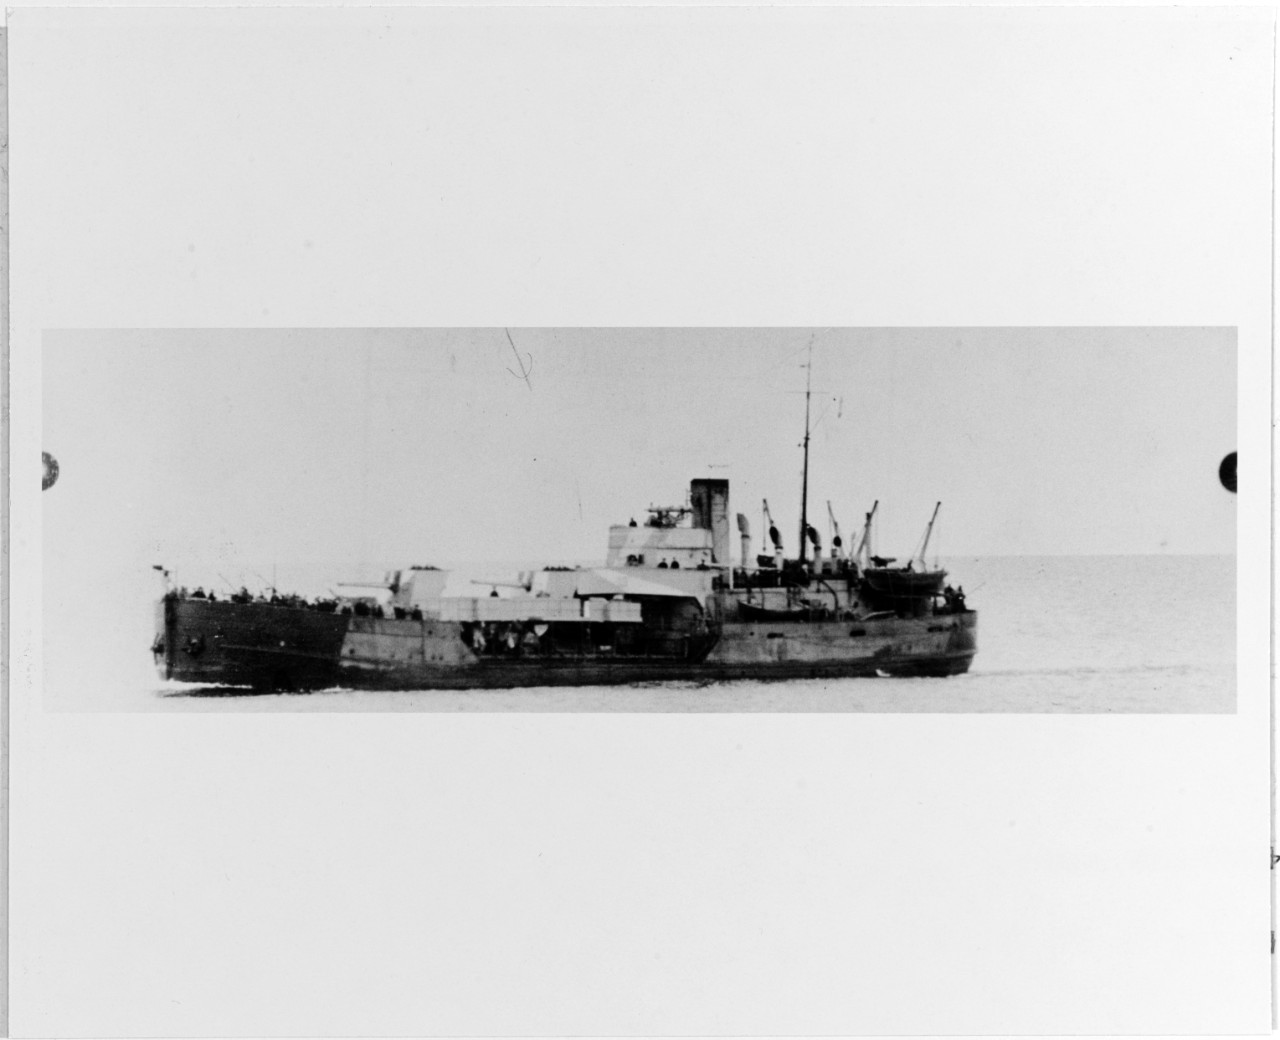 MOSKVA-Class Gunboat